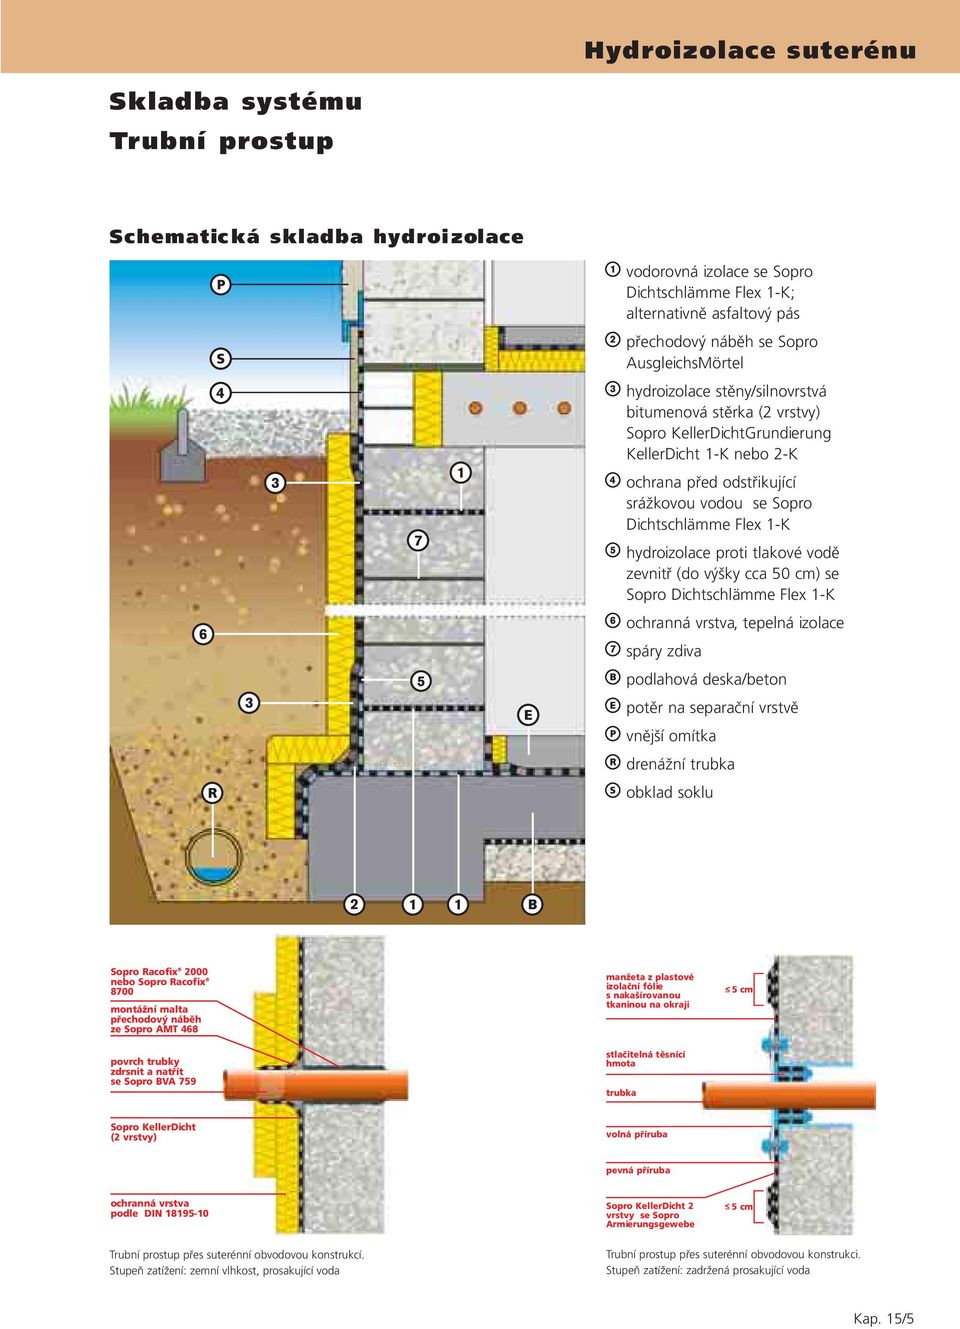 tlakové vodě zevnitř (do výšky cca 50 cm) se Sopro Dichtschlämme Flex 1-K ochranná vrstva, tepelná izolace spáry zdiva podlahová deska/beton potěr na separační vrstvě vnější omítka drenážní trubka